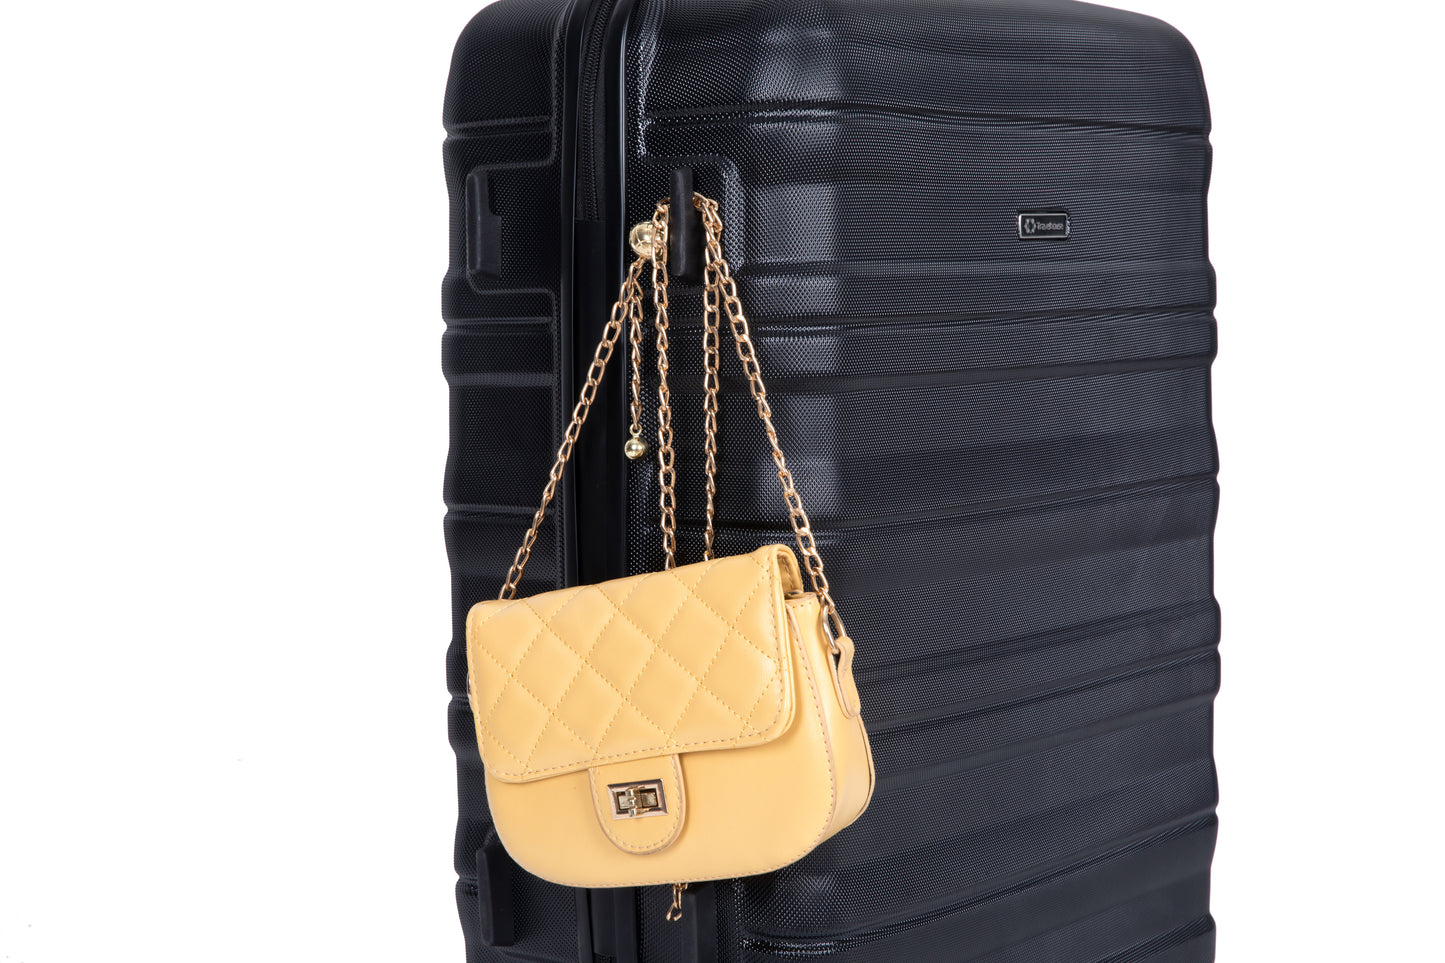 Ensembles de bagages extensibles 3 pièces, valise PC légère et durable avec deux crochets, roulettes pivotantes, serrure TSA, (21/25/29) noir